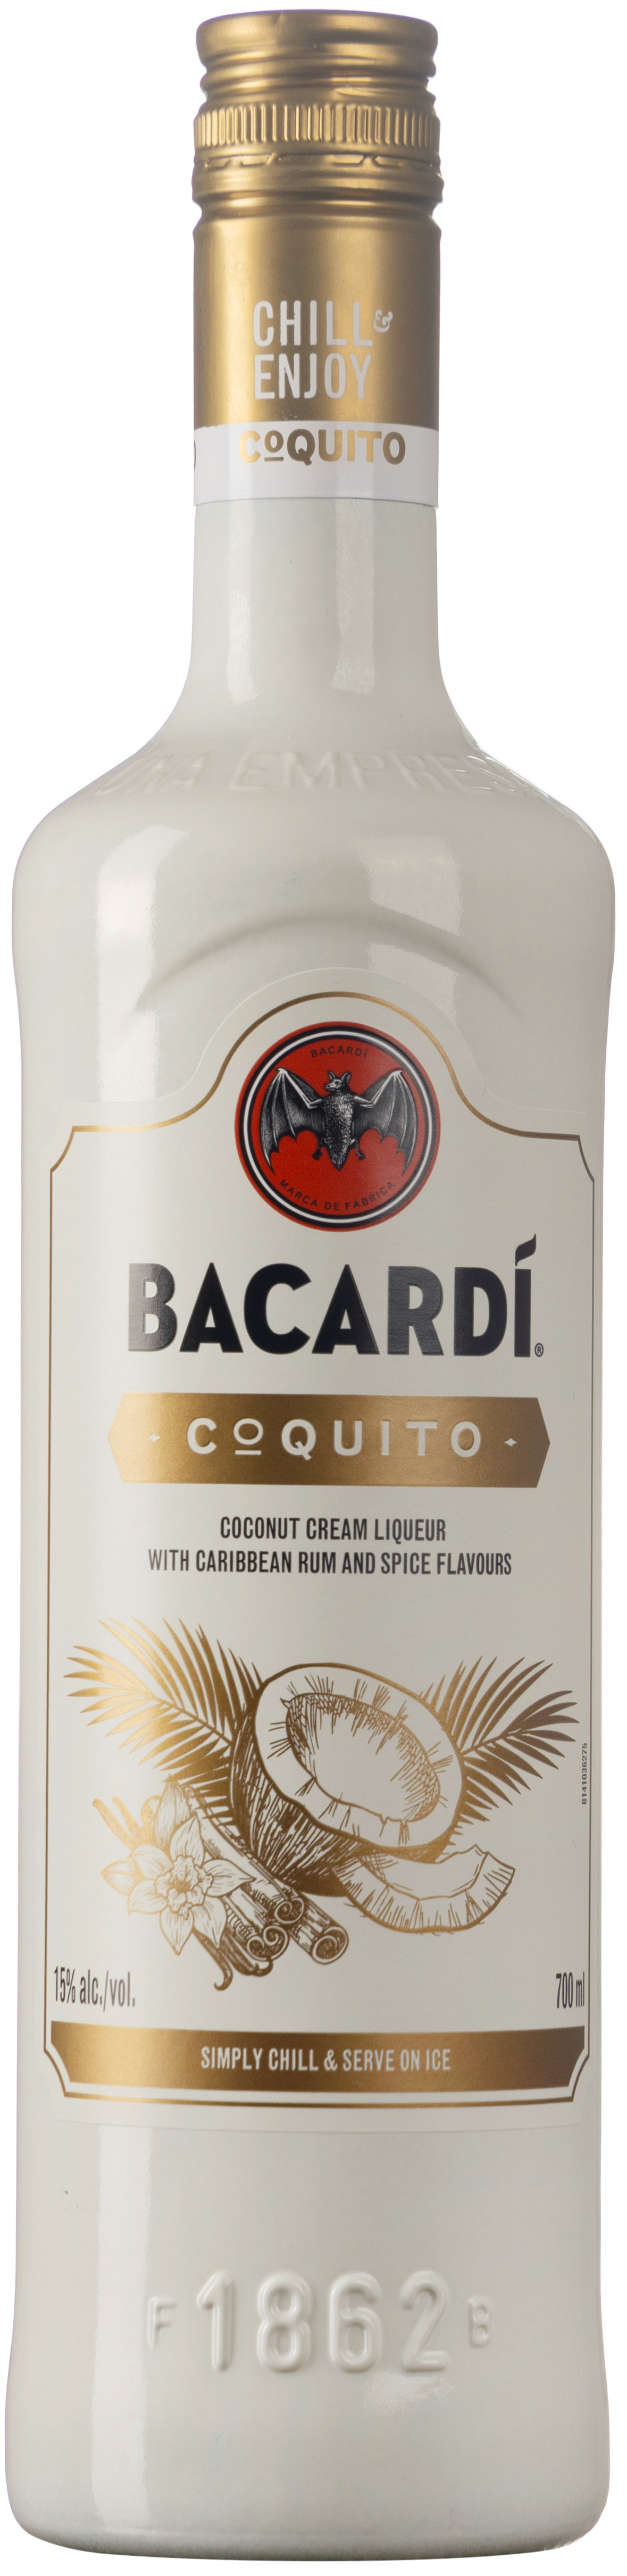 Bacardi Coquito 15% vol. 0,7L